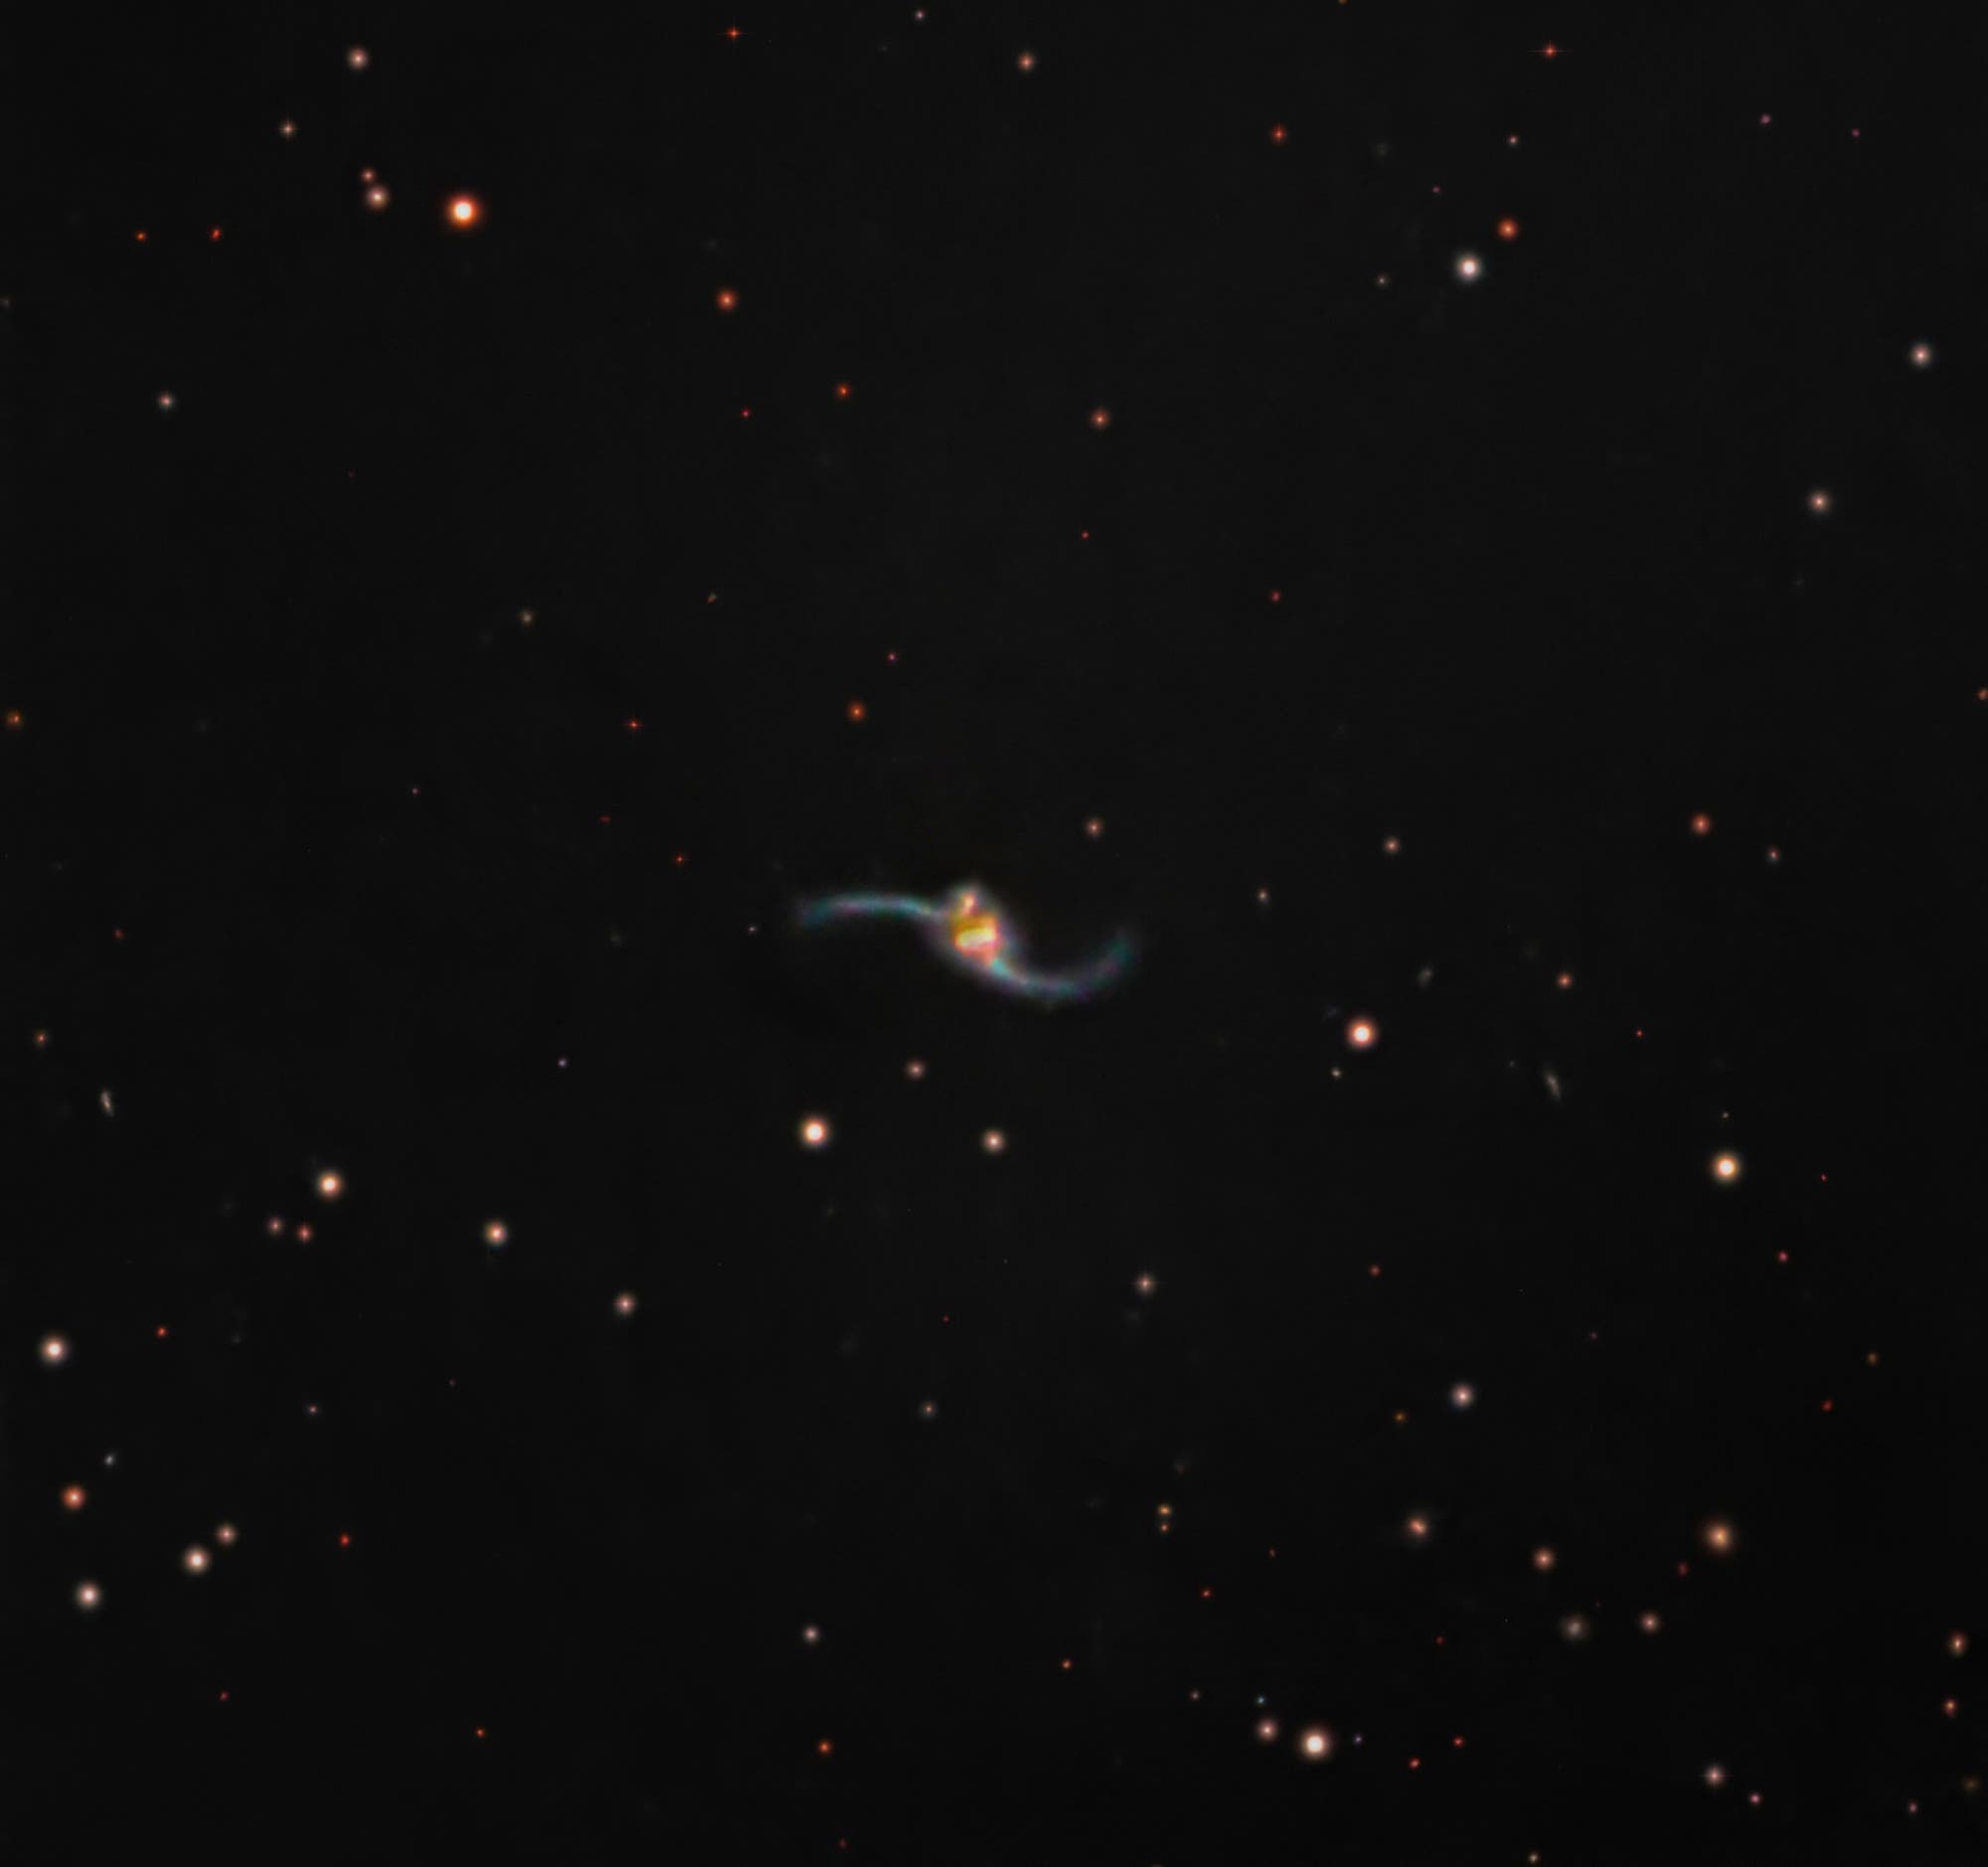 Galaxy NGC 2623/Arp 243